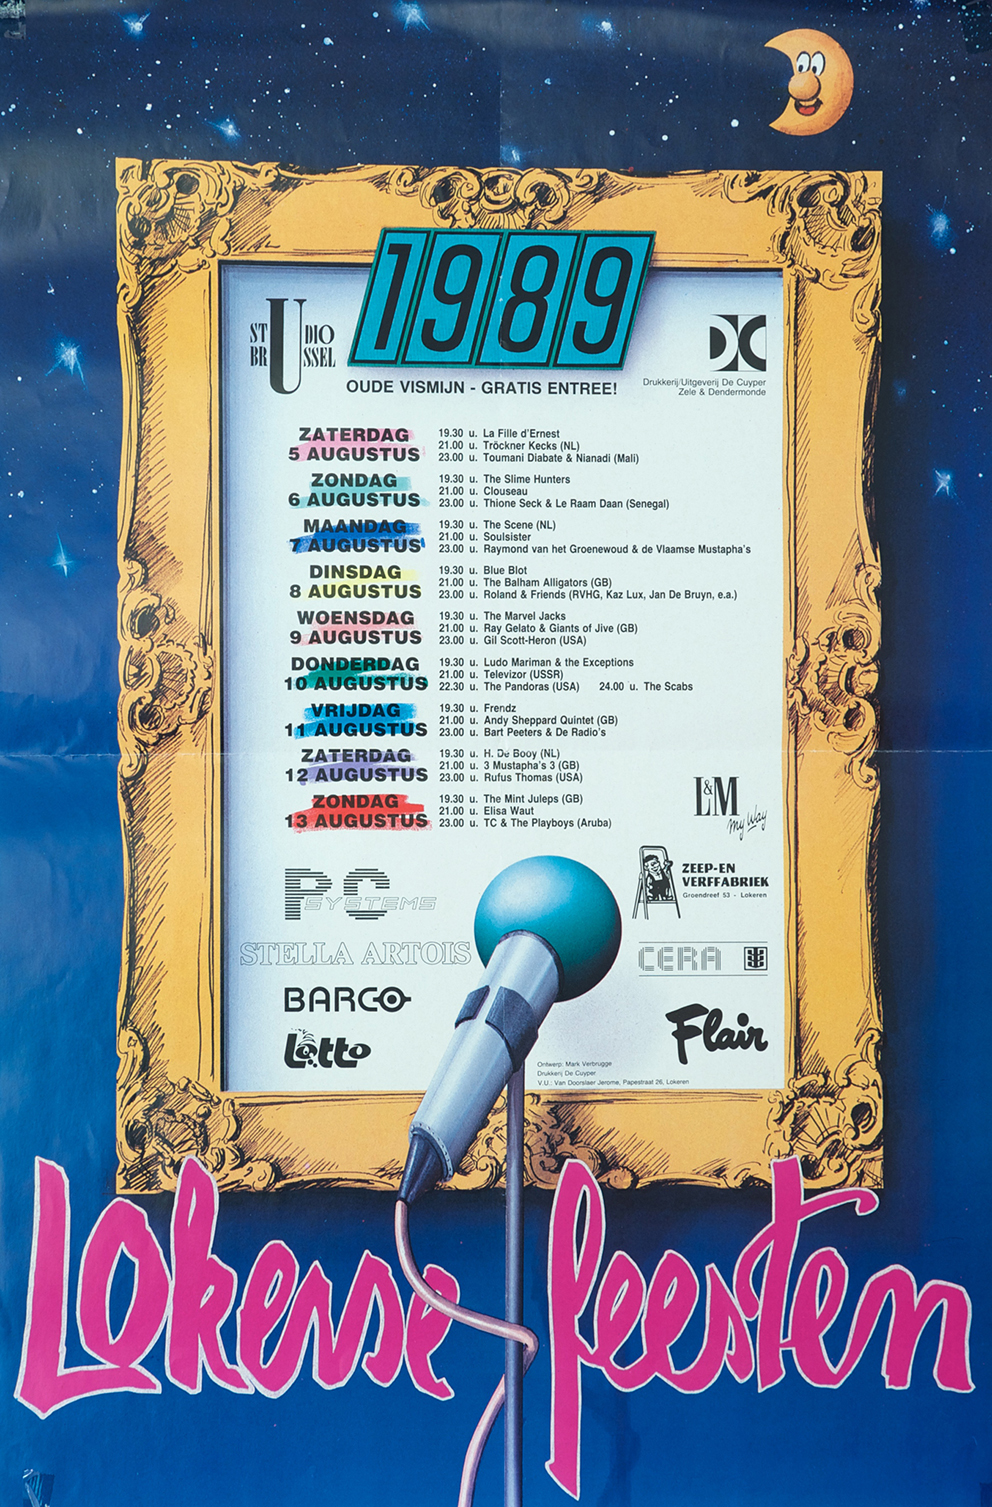 1989 Affiche Lokerse feesten